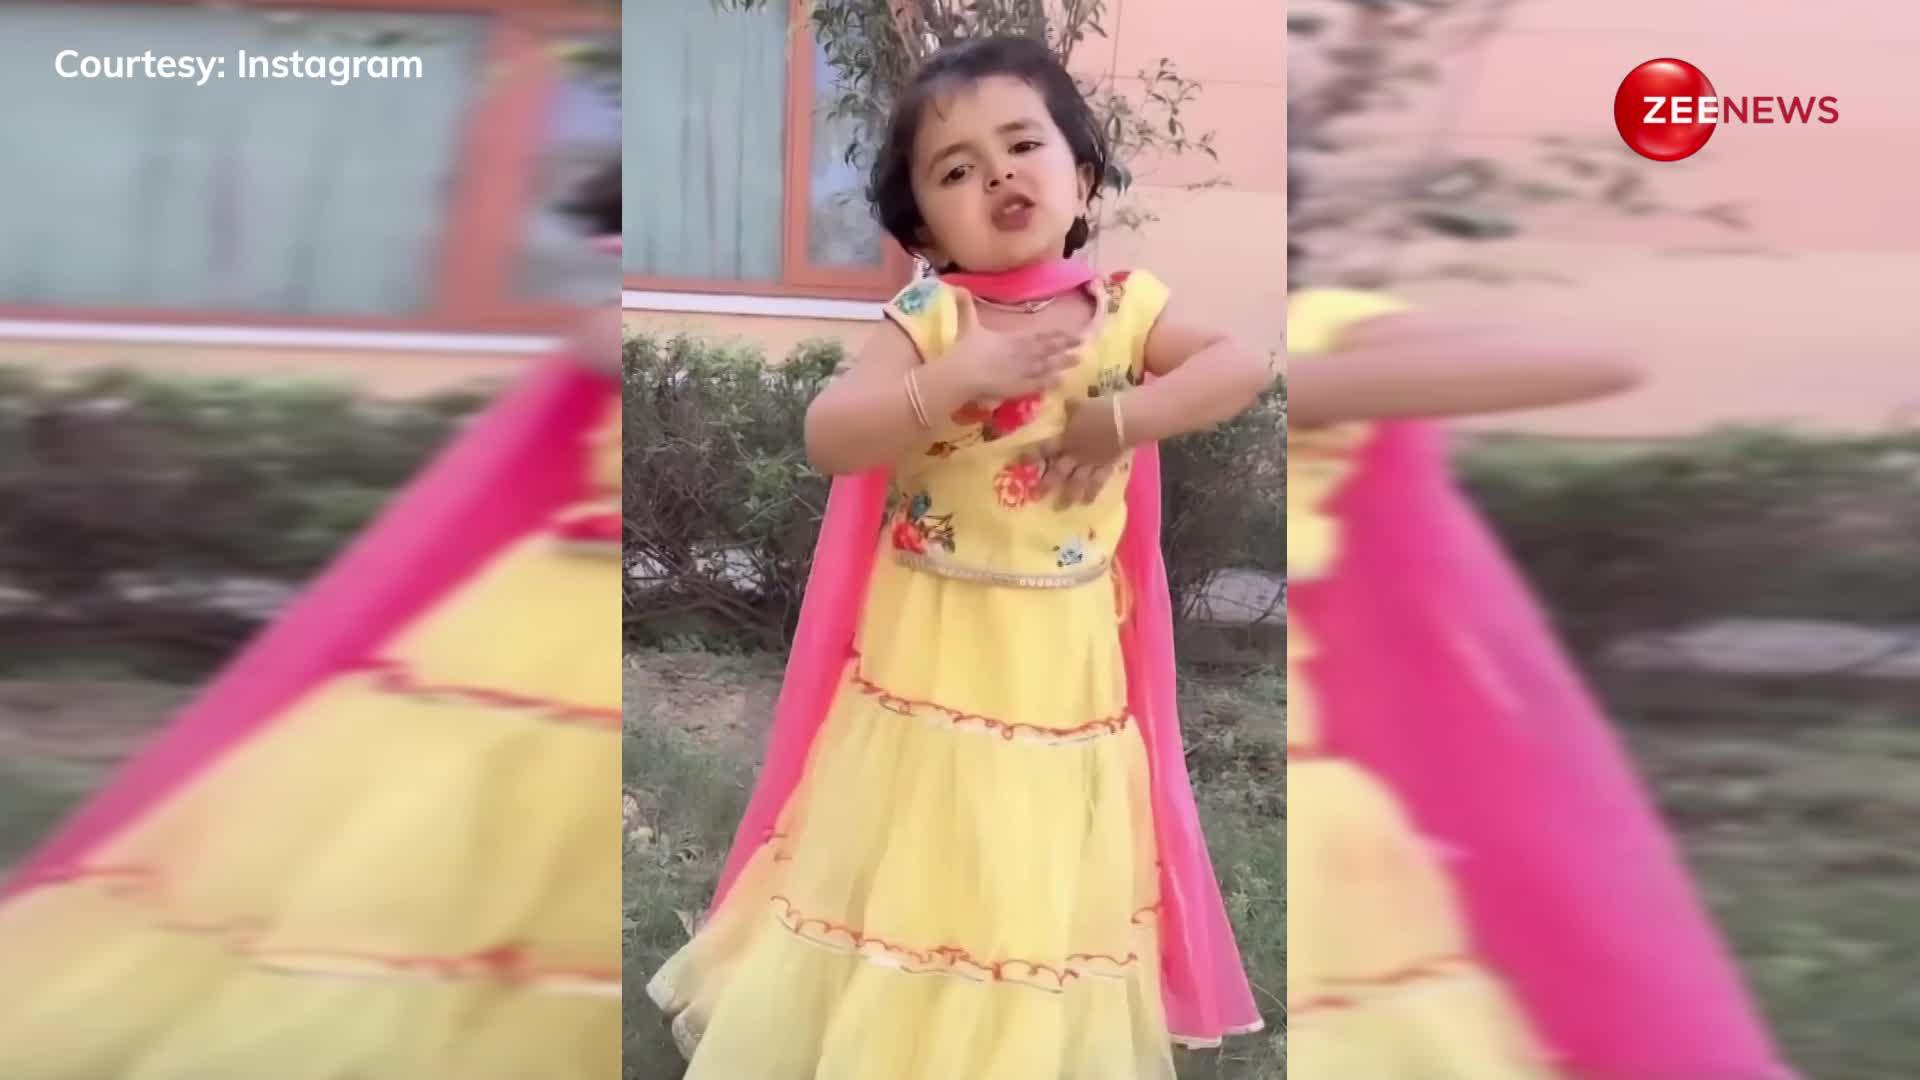 ये आज-कल के बच्चे! 3 साल की छोटी बच्ची ने हरियाणी गाने पर डांस के साथ दिए गजब एक्सप्रेशन, वायरल हो गया वीडियो